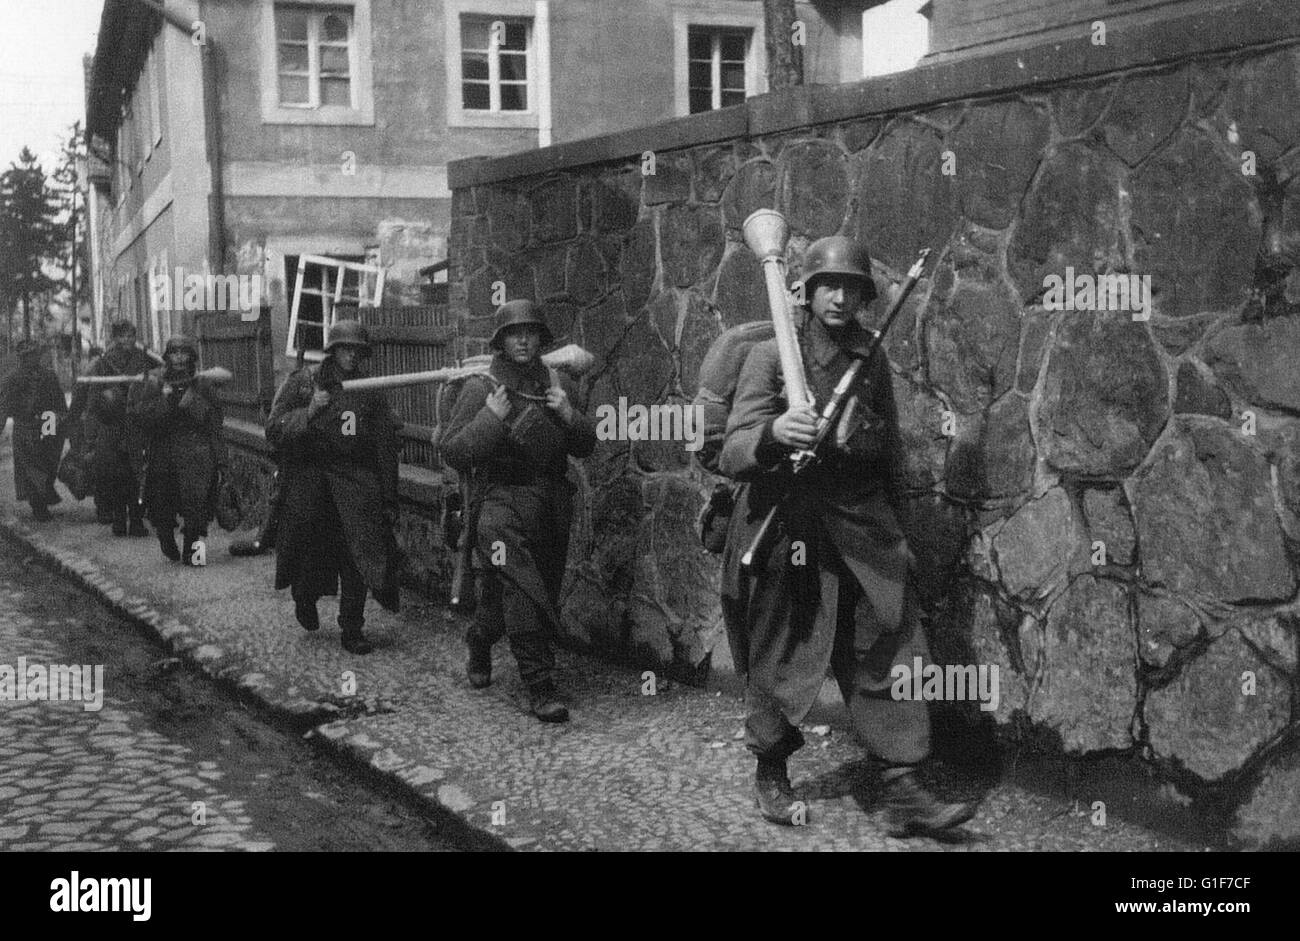 La Wehrmacht allemande soldats munis d'armes antichar Panzerfaust aller vers une réduction de la ligne de front en Allemagne 1945 Banque D'Images